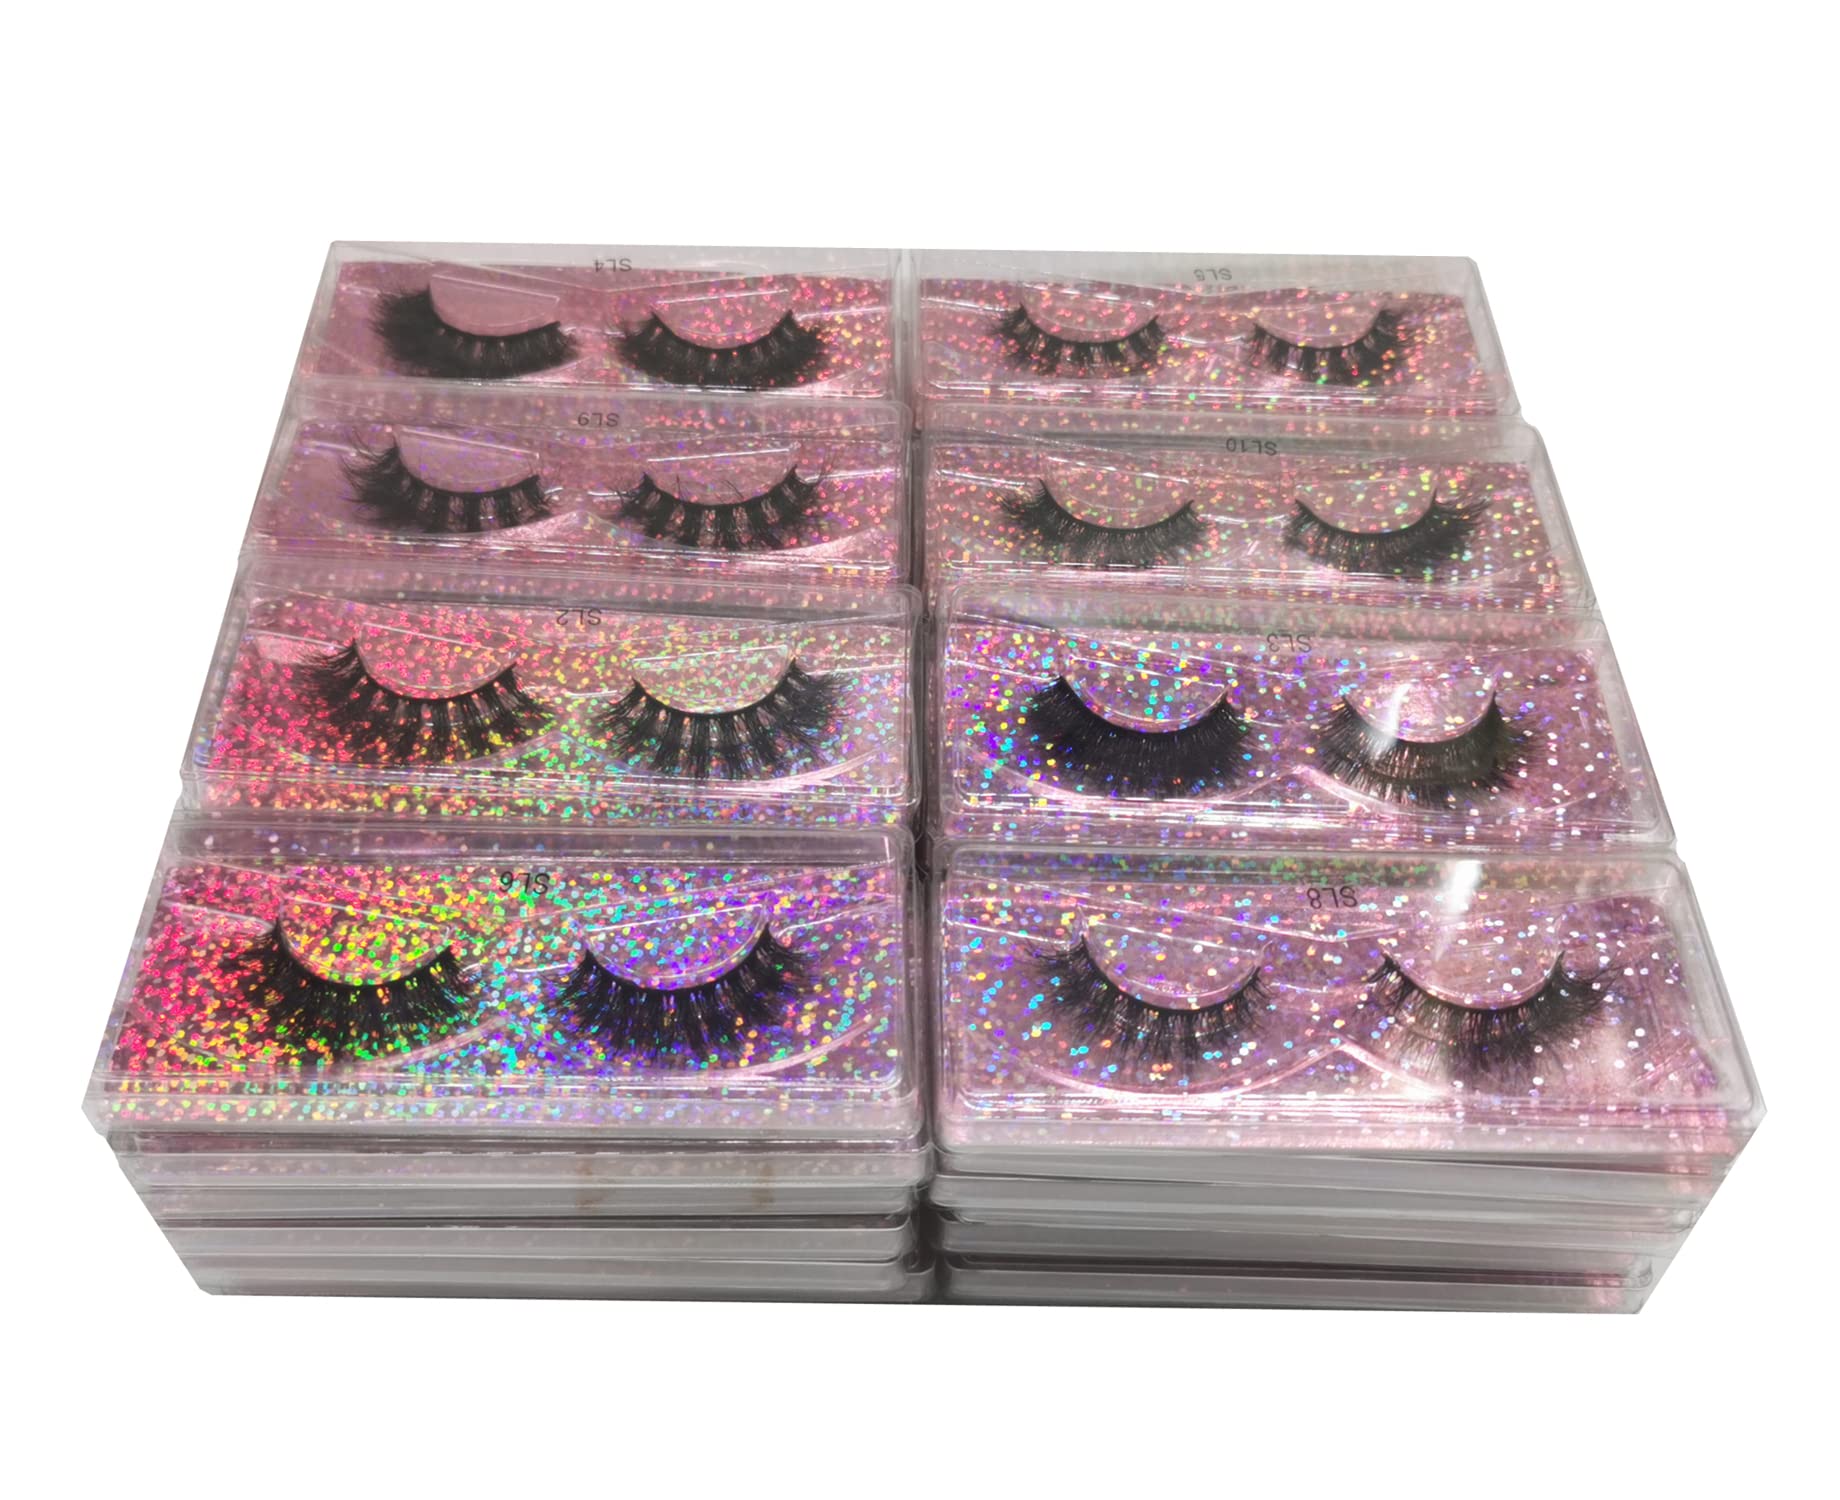 Ellazzle 10 Pairs Faux Mink Eyelashes Wholesale Lashes Pack, Lashes Natural Look 16mm-20mm False Eyelashes Pink